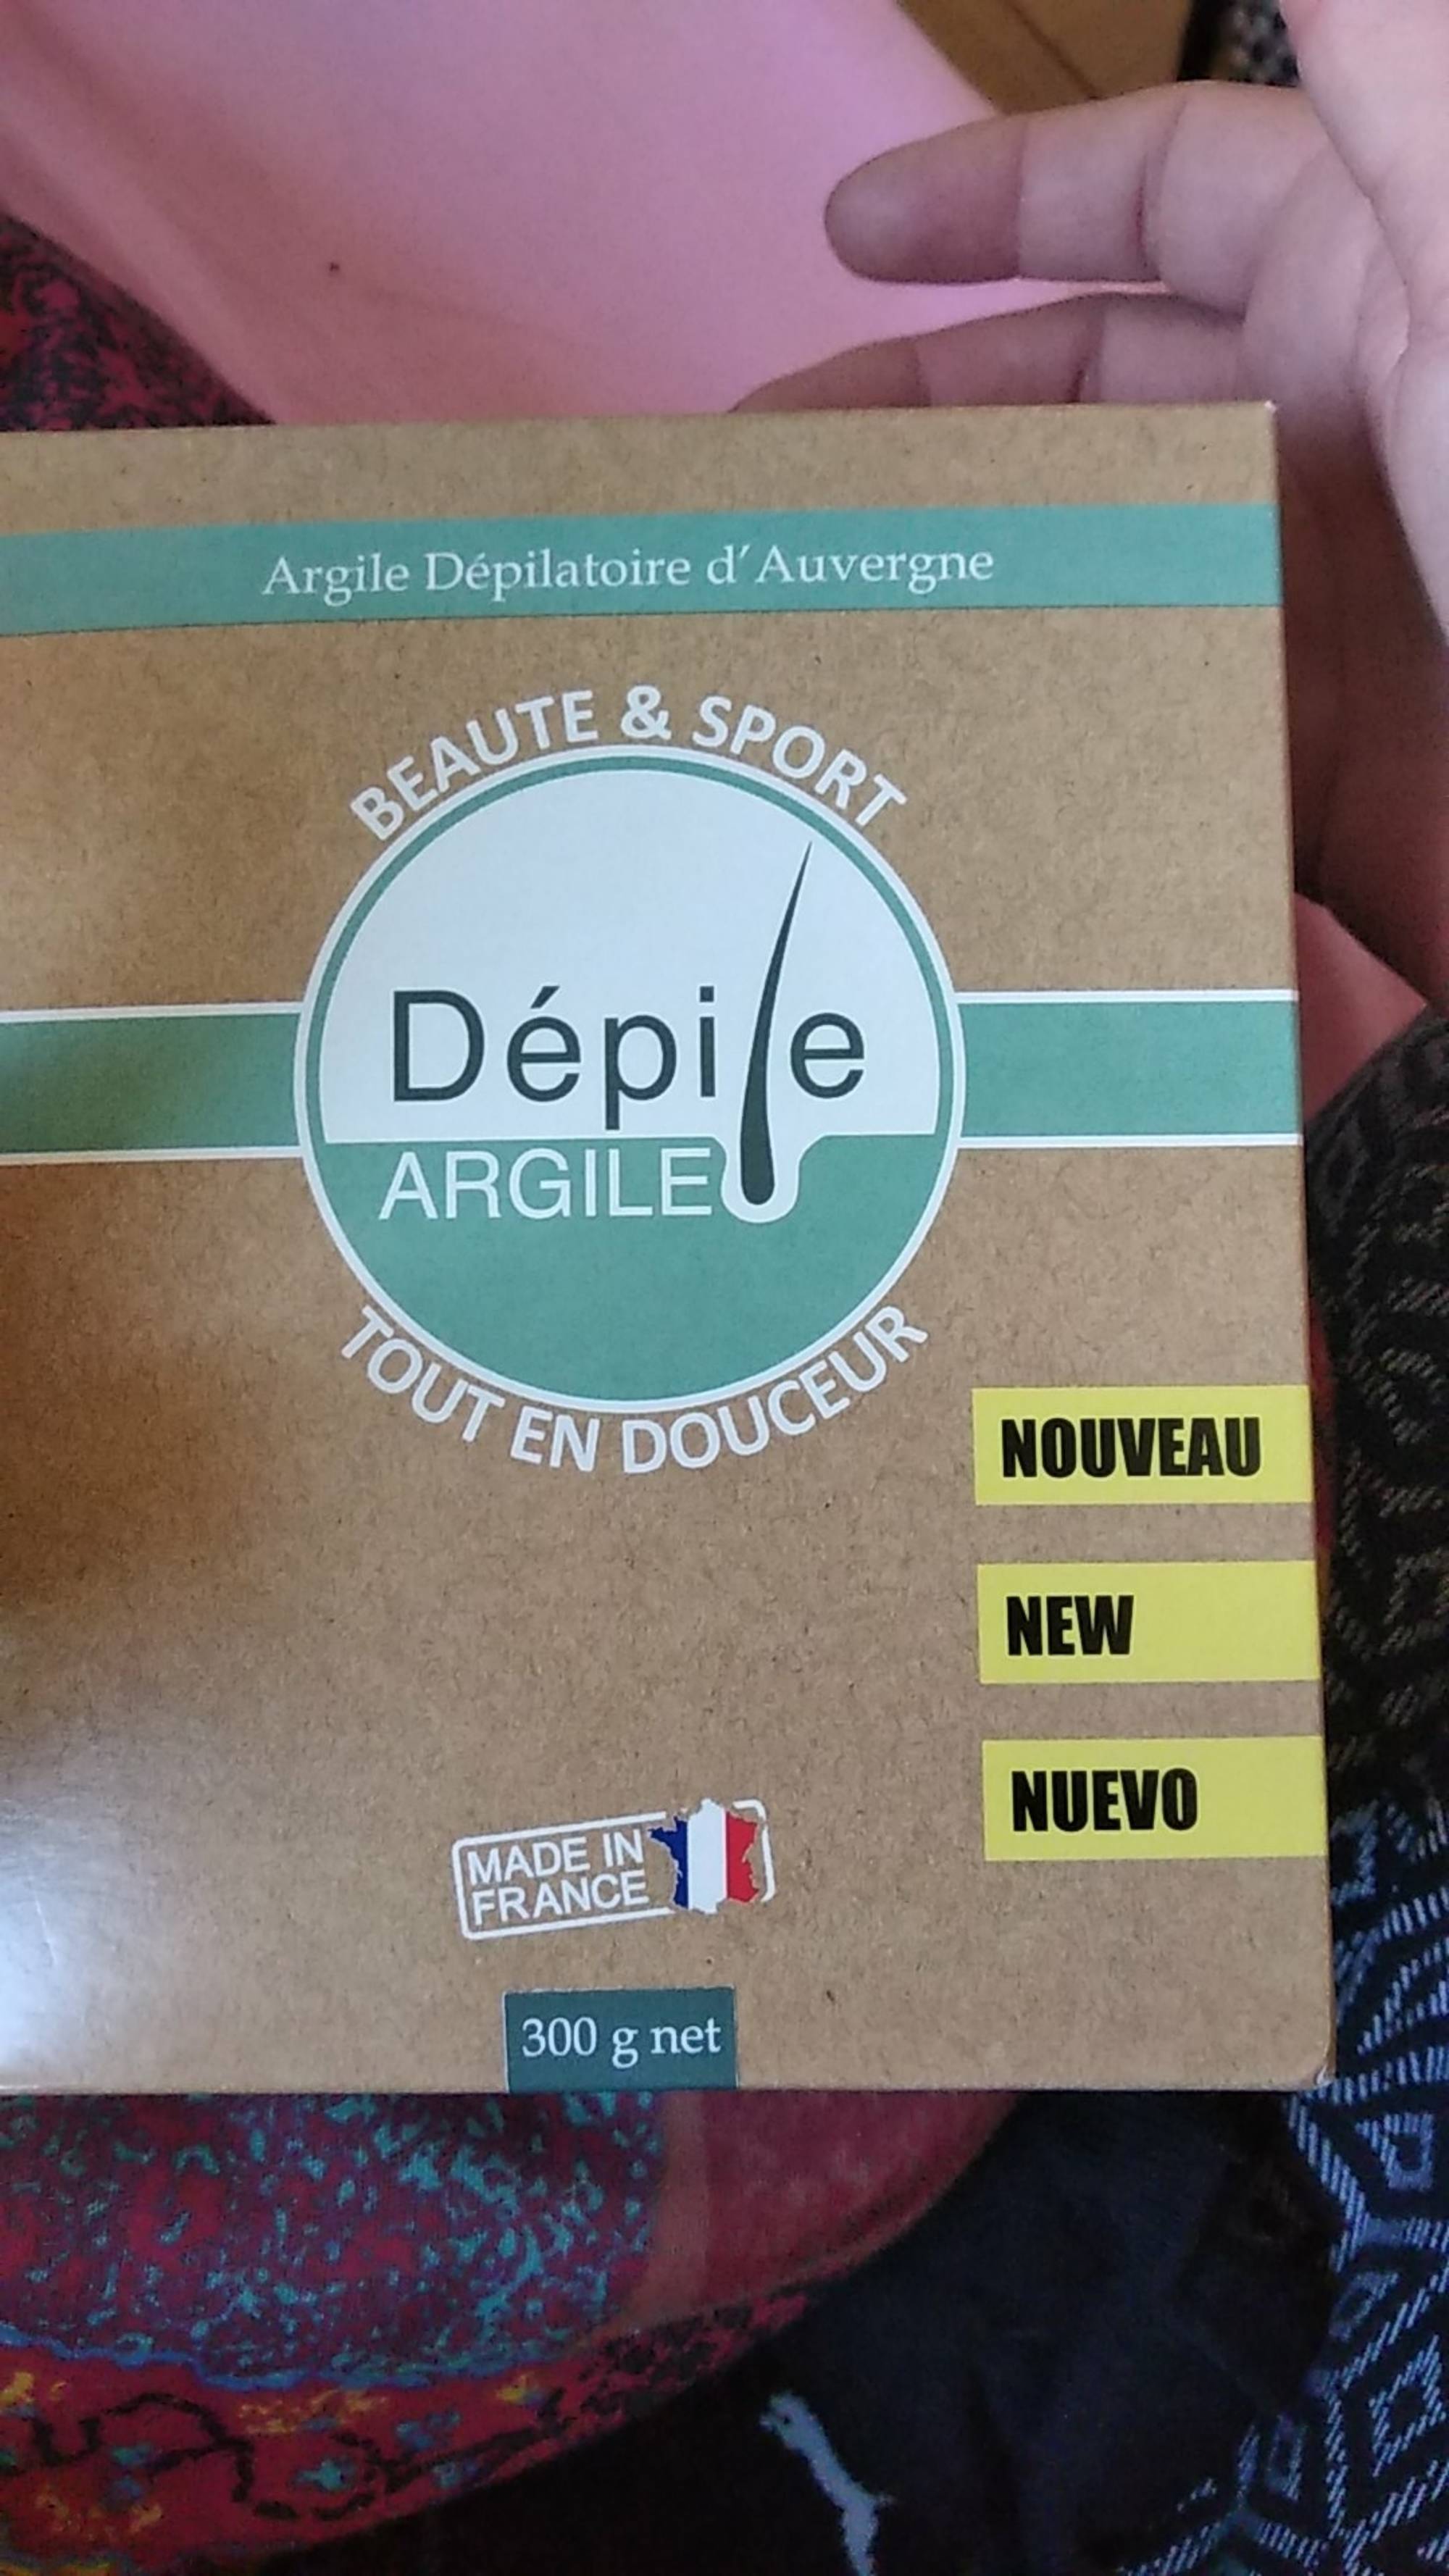 DÉPILE - Beauté & sport - Argile dépilatoire d'Auvergne